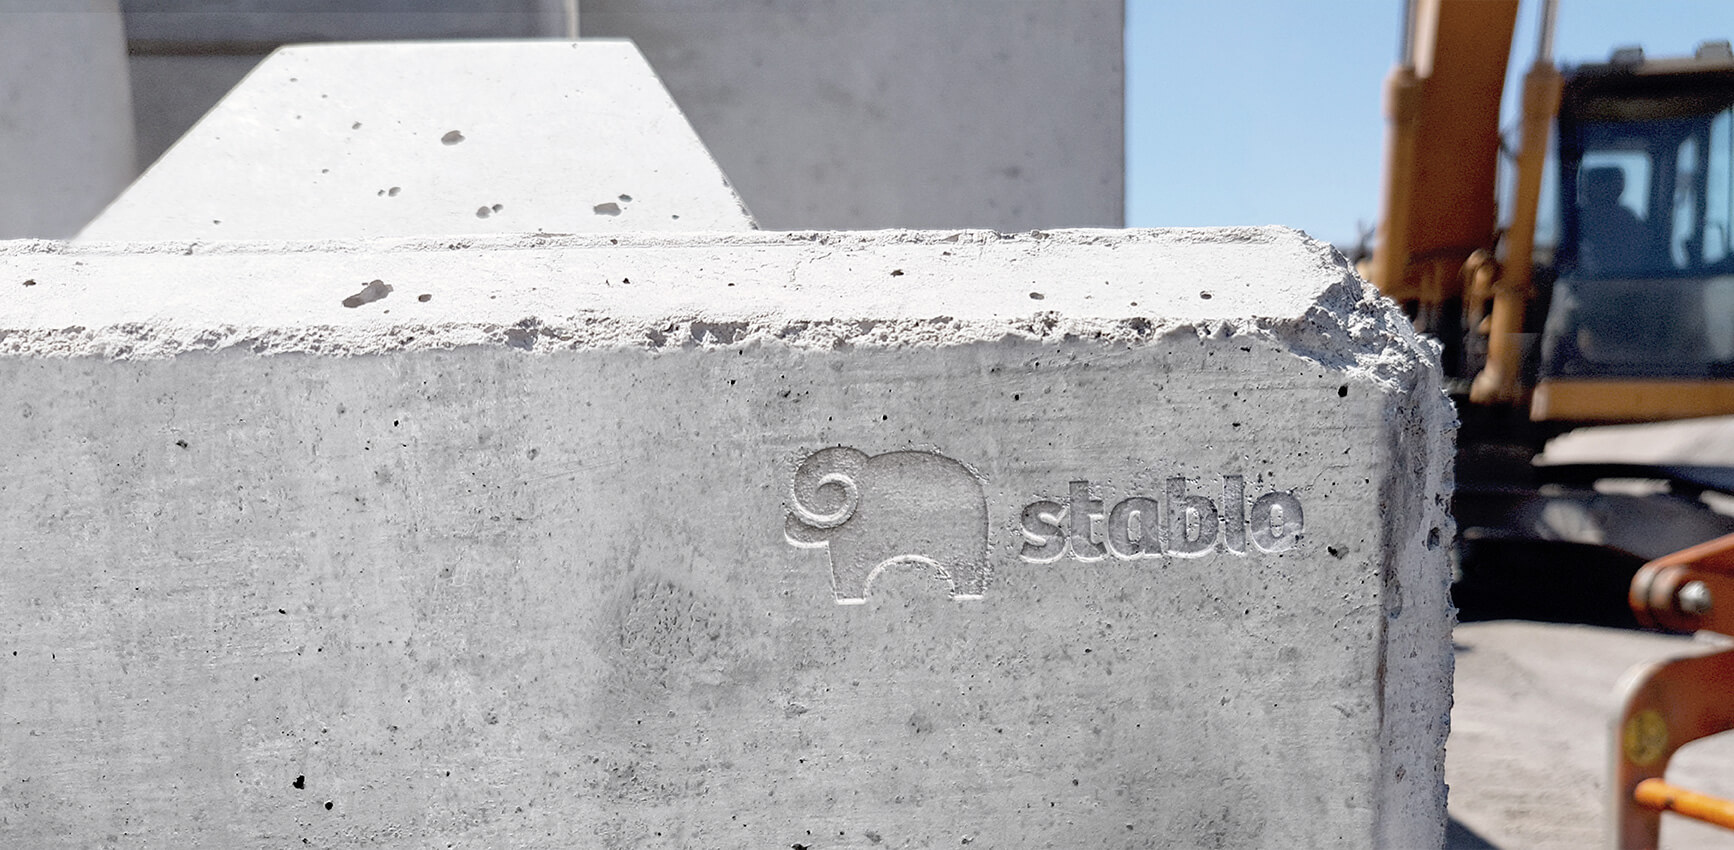 Vytvořili jsme zcela novou značku Stablo. Připravili jsme logo, vizuální styl nebo web s grafickými kalkulátory